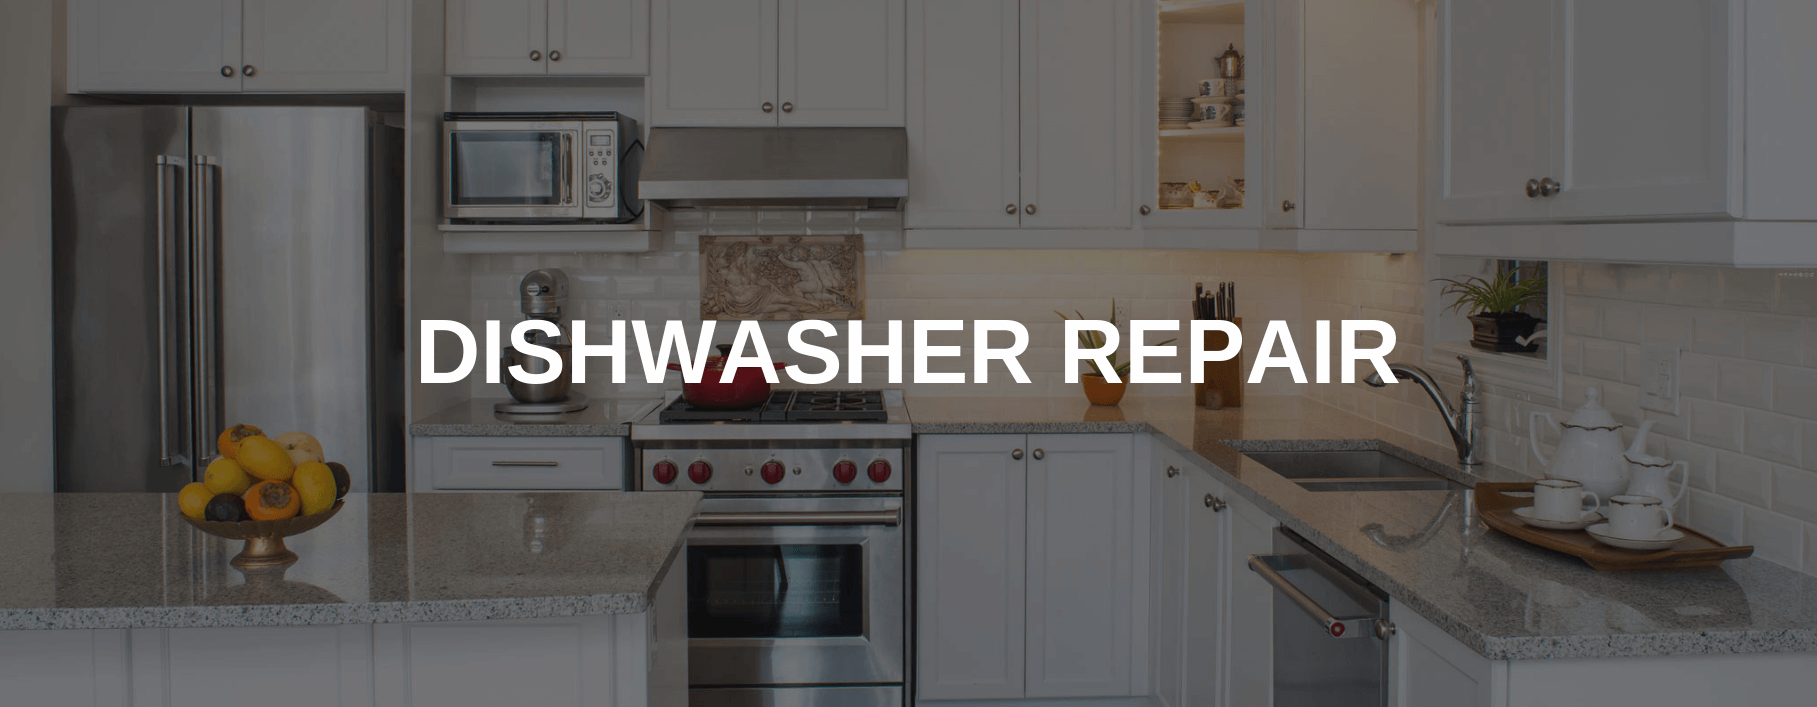 dishwasher repair bell